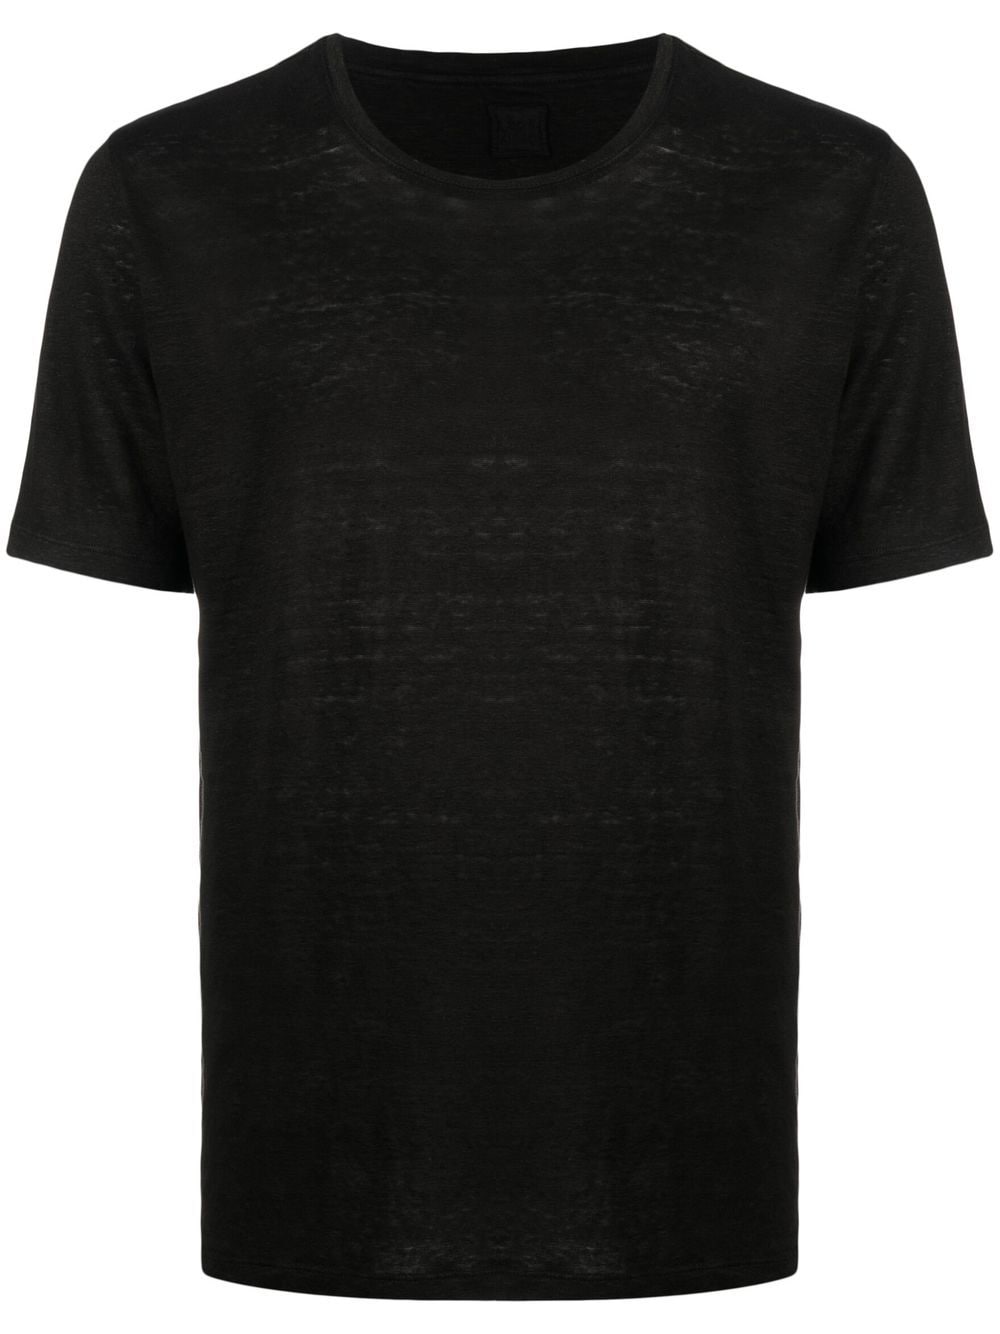 120% lino t-shirt en lin à encolure ronde - noir